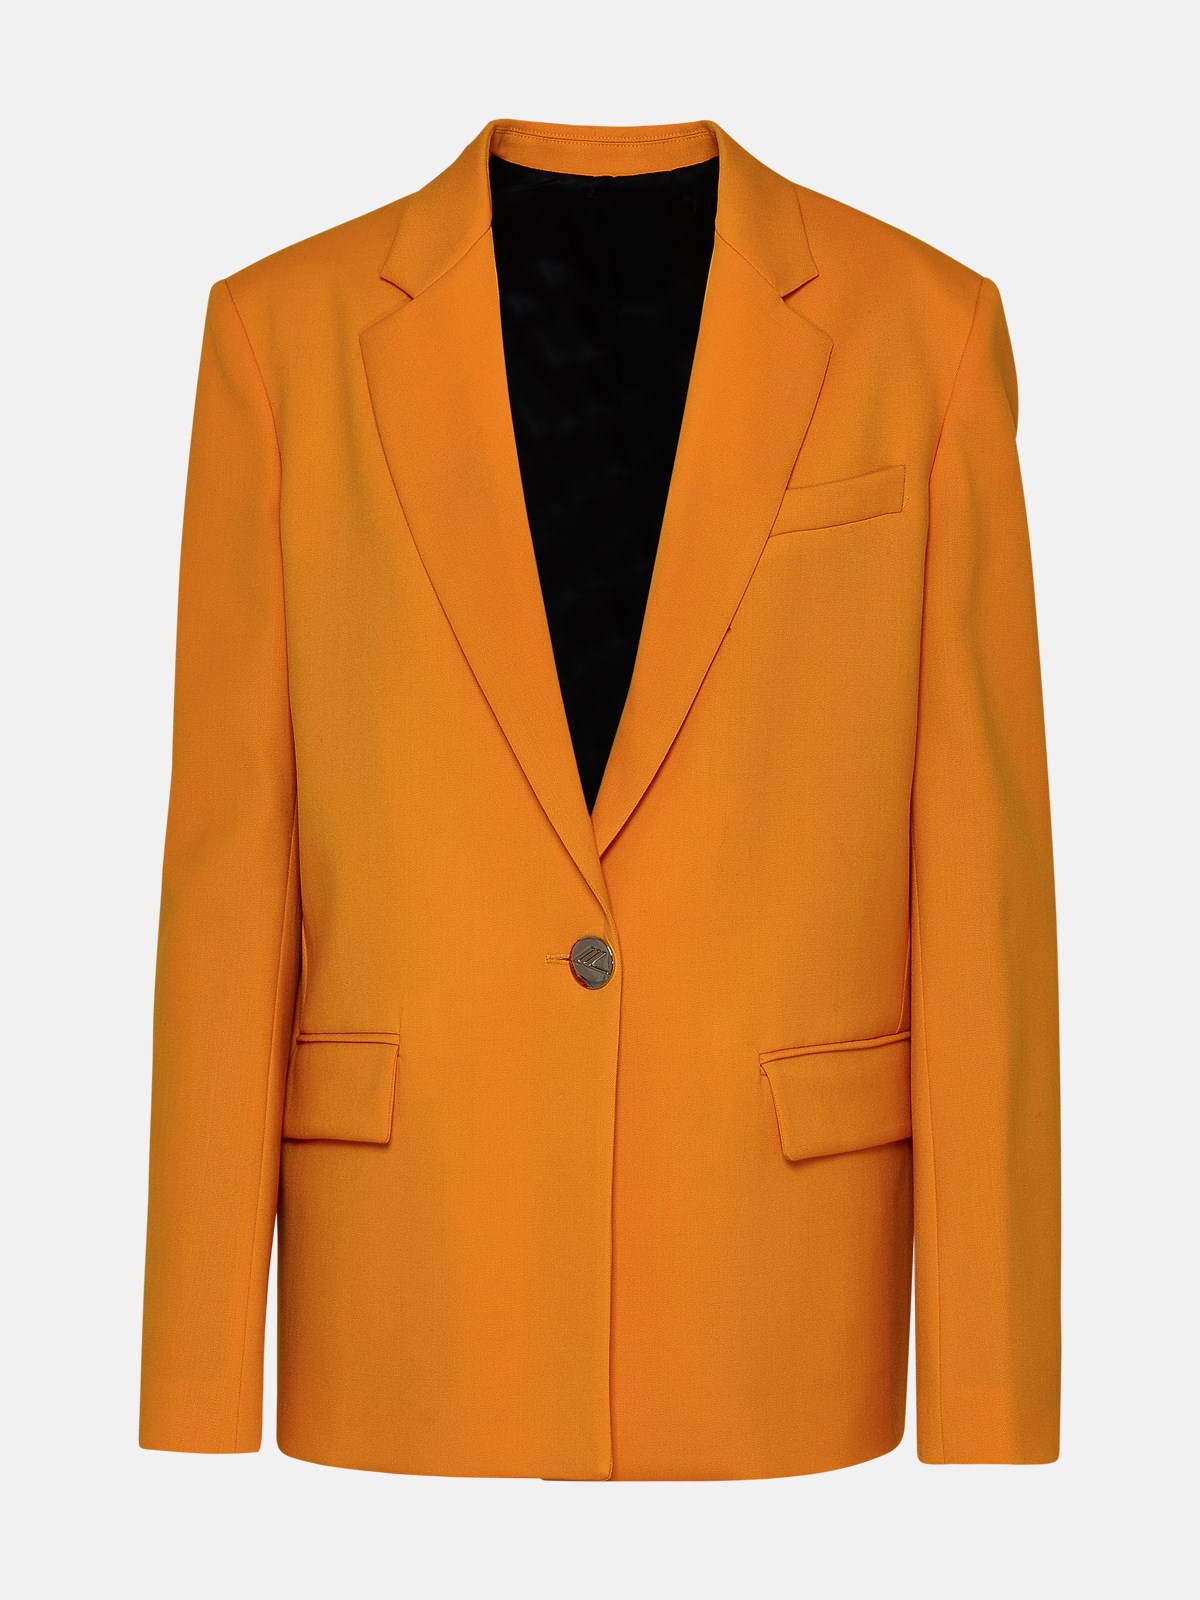 Attico Orange Wool Blend White Blazer Jacket